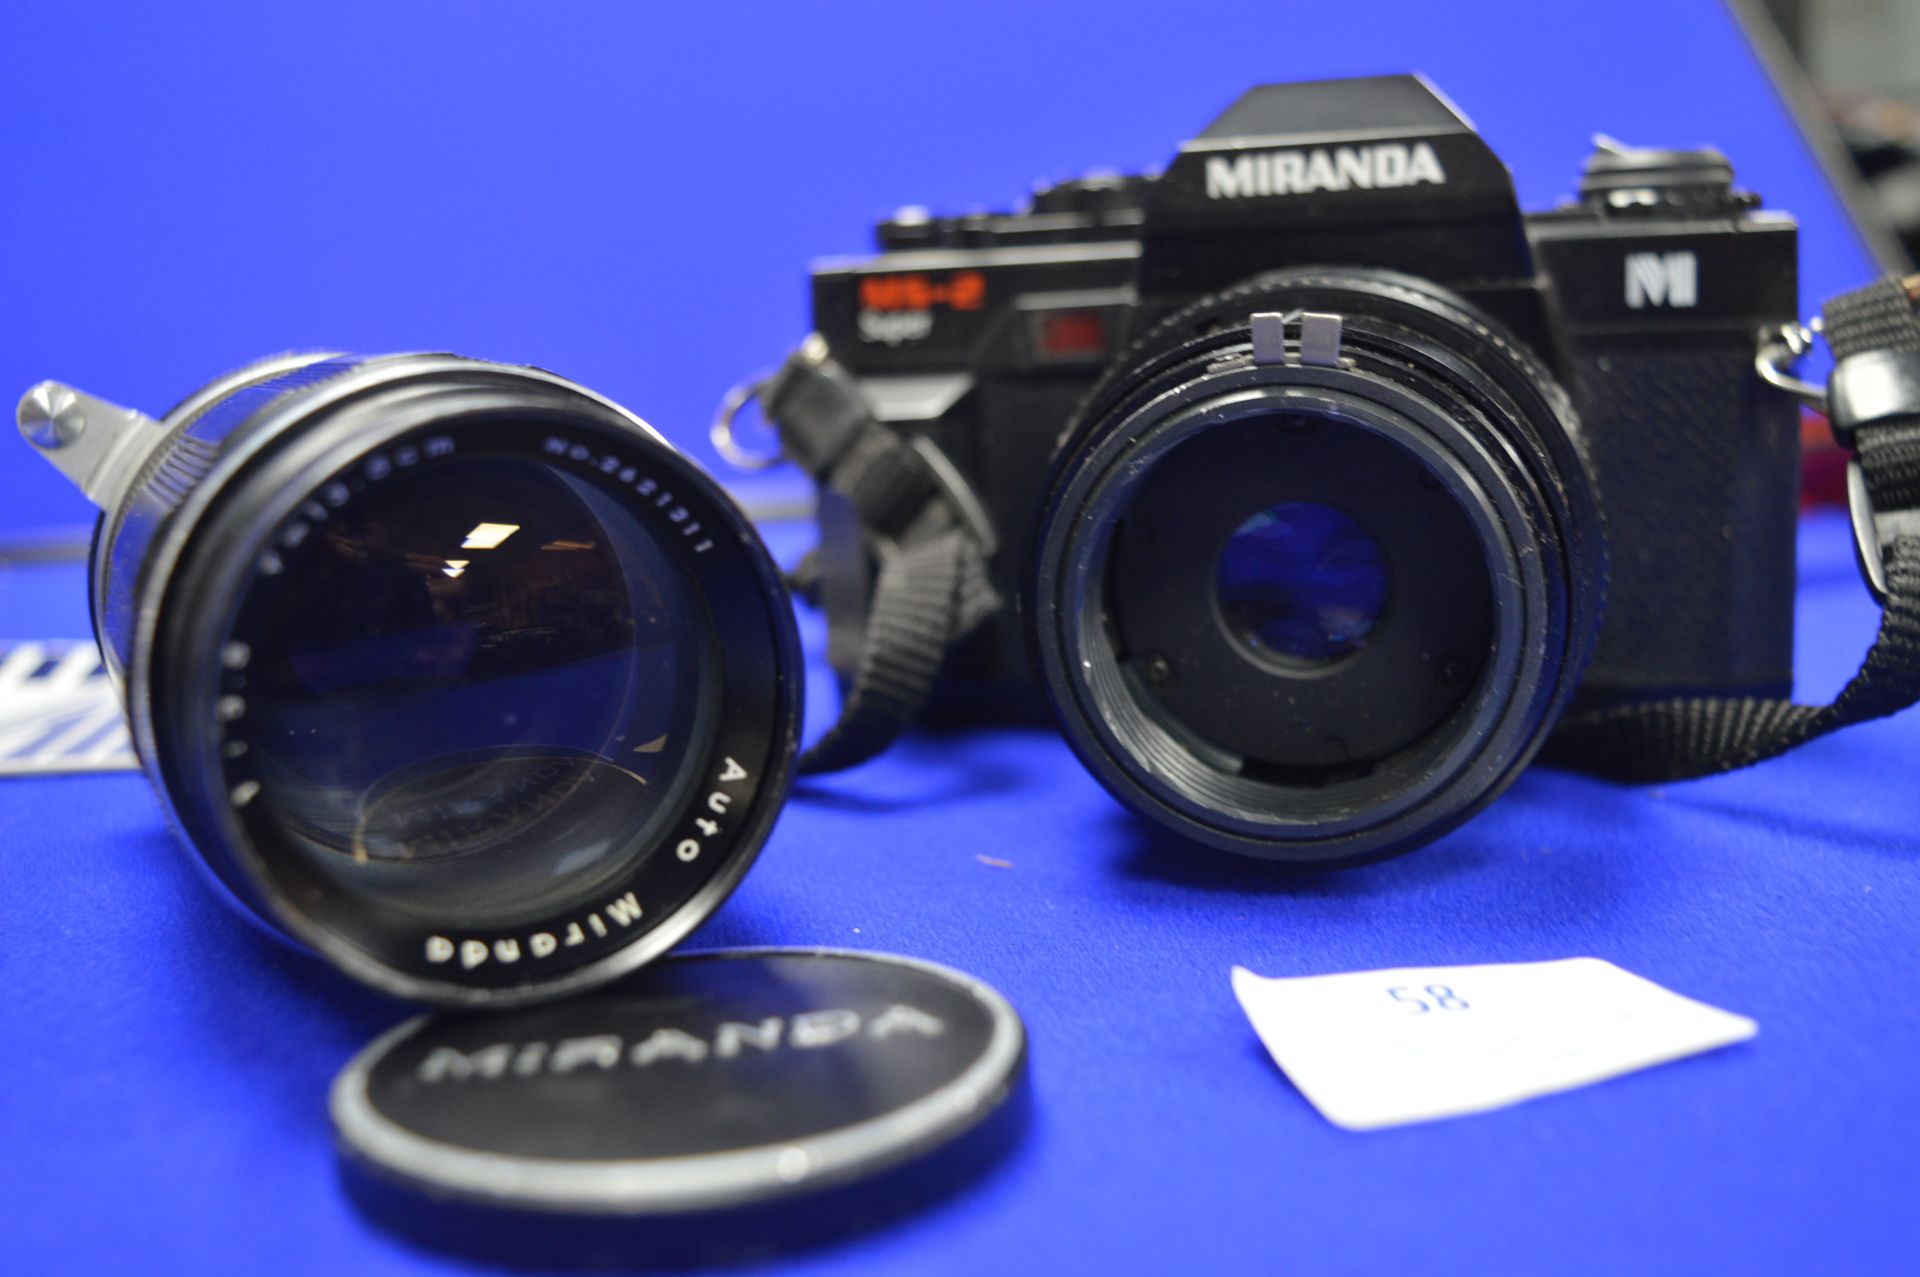 Miranda MS2 Super Camera with Miranda Flash and Lens - Image 2 of 2